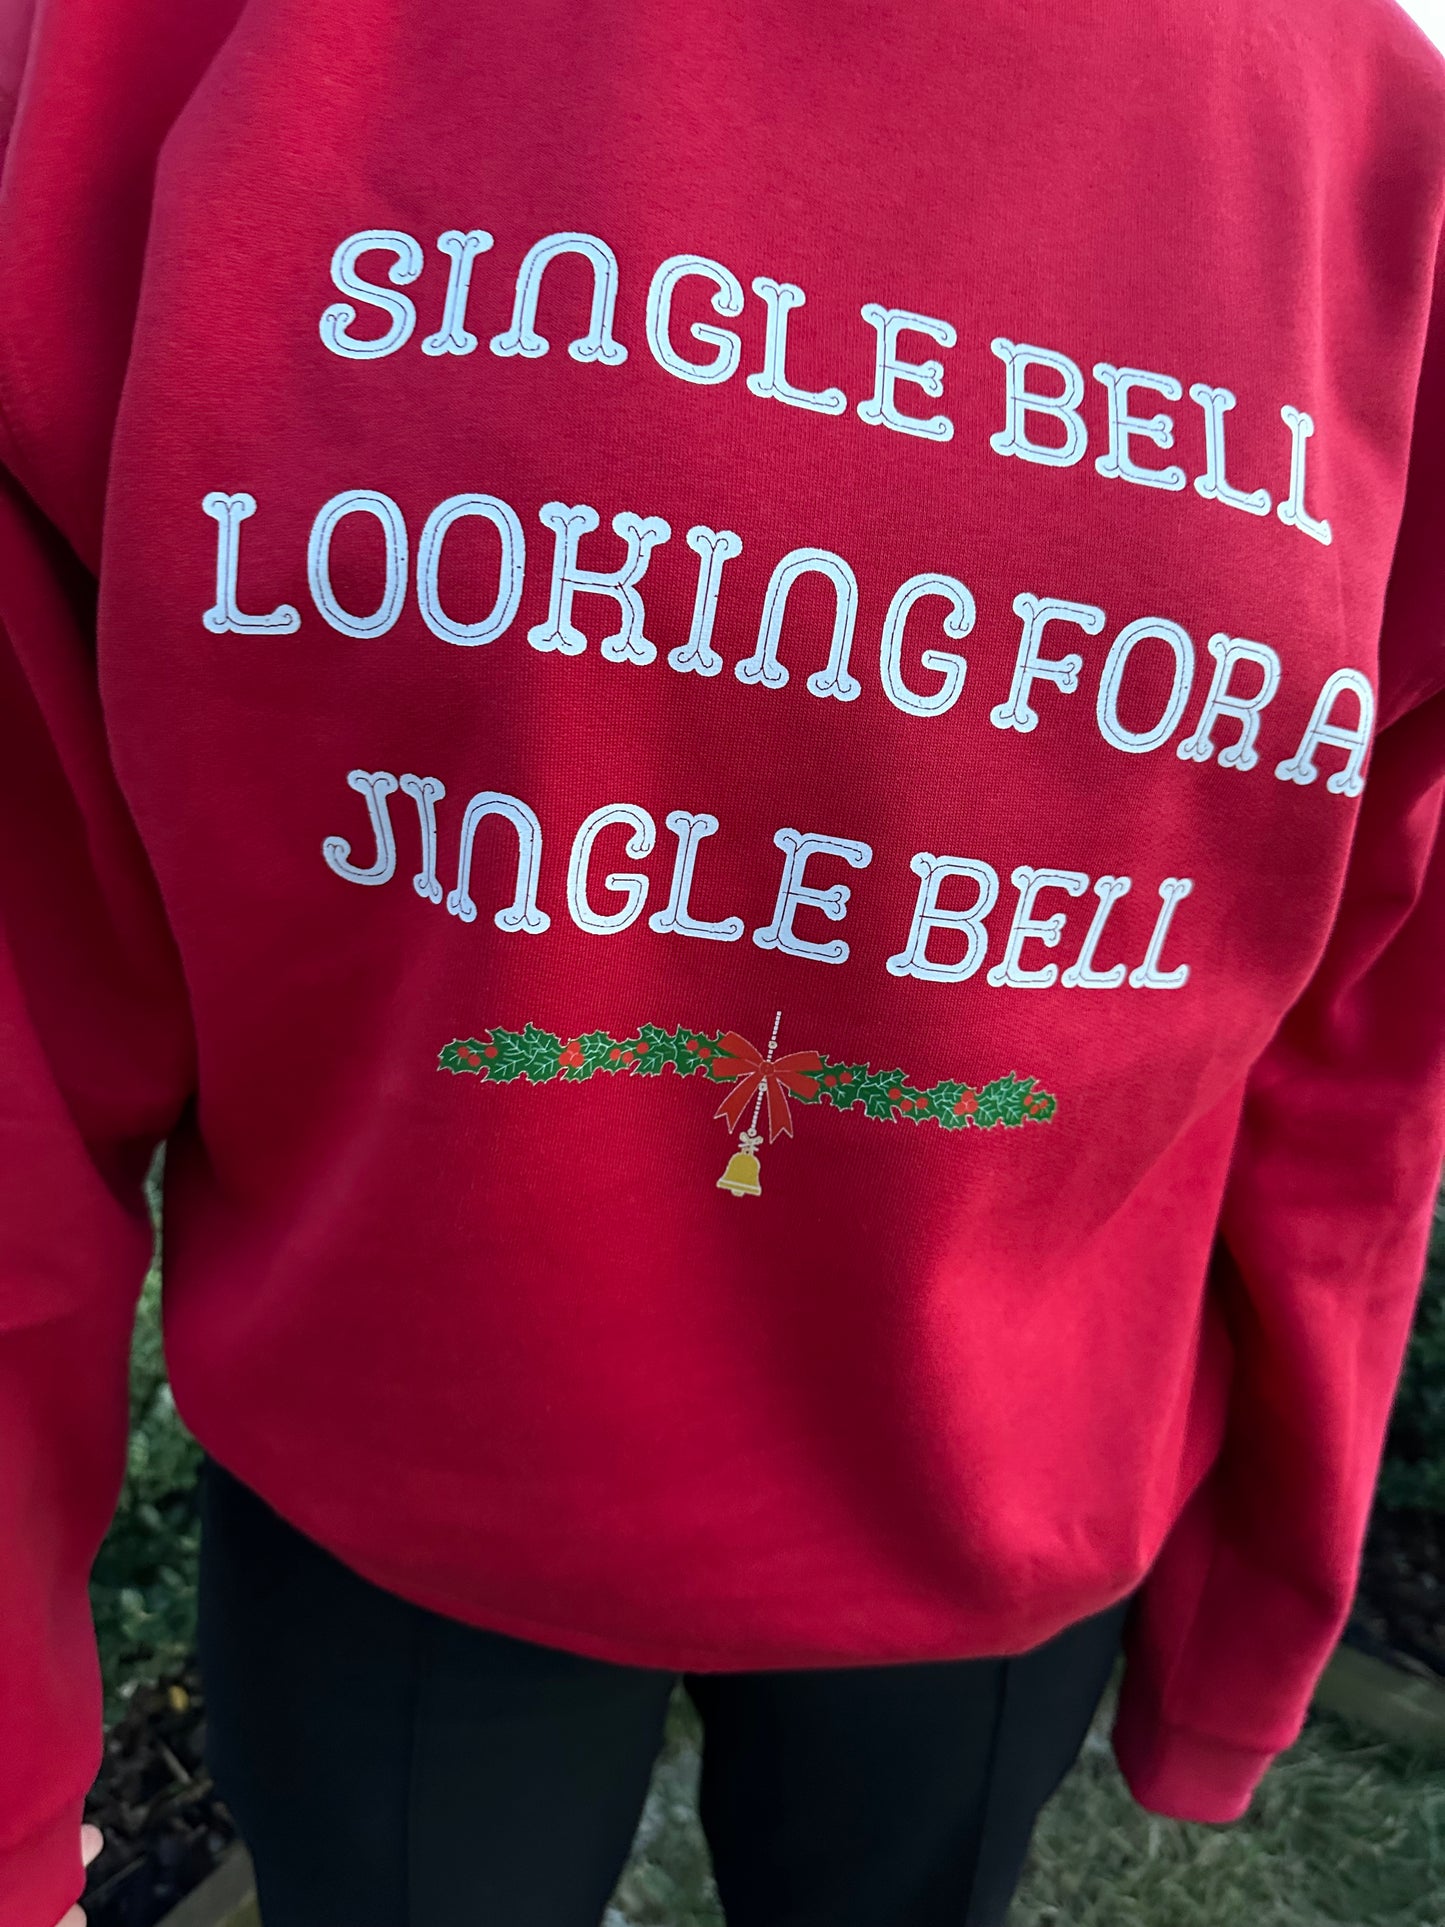 "Single bell" sweatshirt.